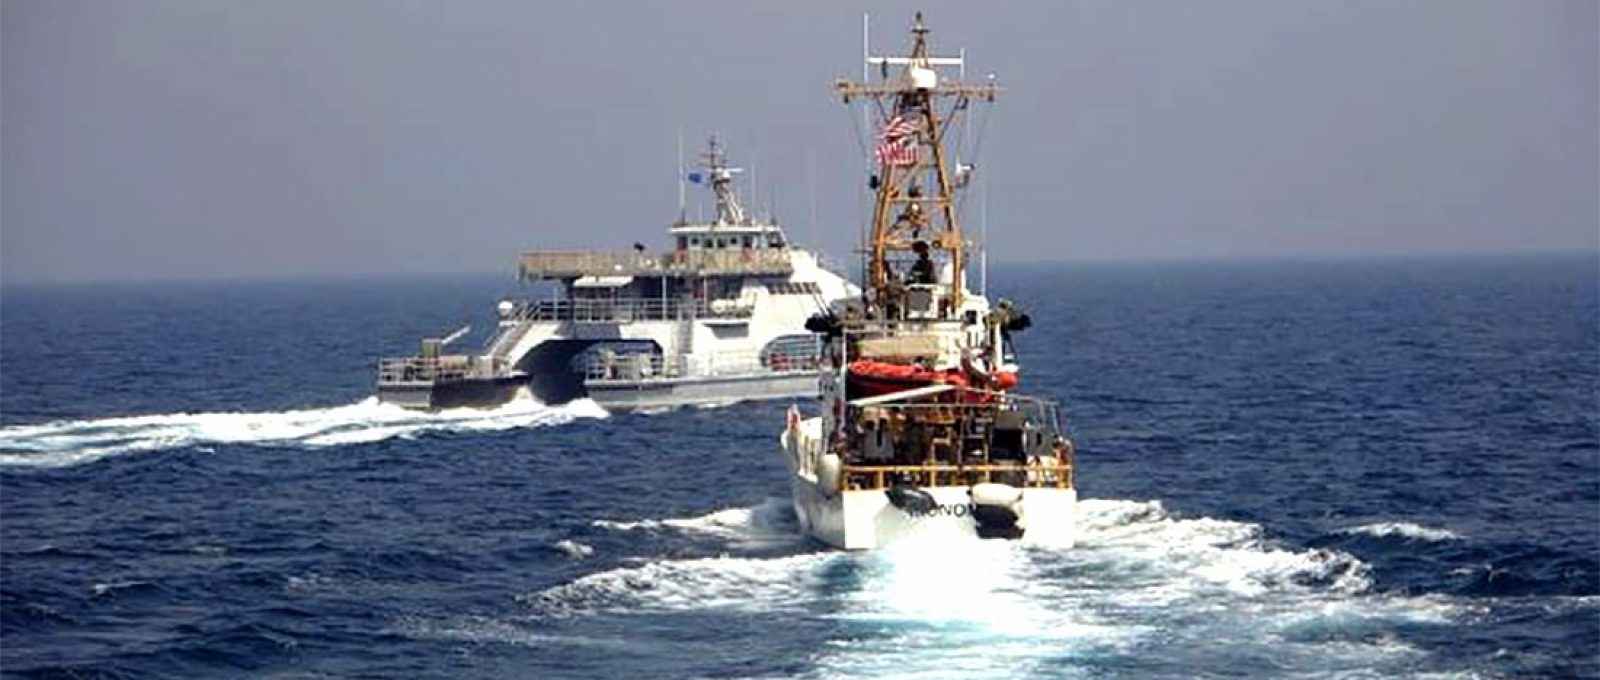 O Harth 55, da marinha do IRGC, à esquerda, cruza a proa do barco de patrulha da Guarda Costeira americana USCGC Monomoy, à direita, enquanto este patrulhava ao sul do Golfo Pérsico (Foto: US Navy).